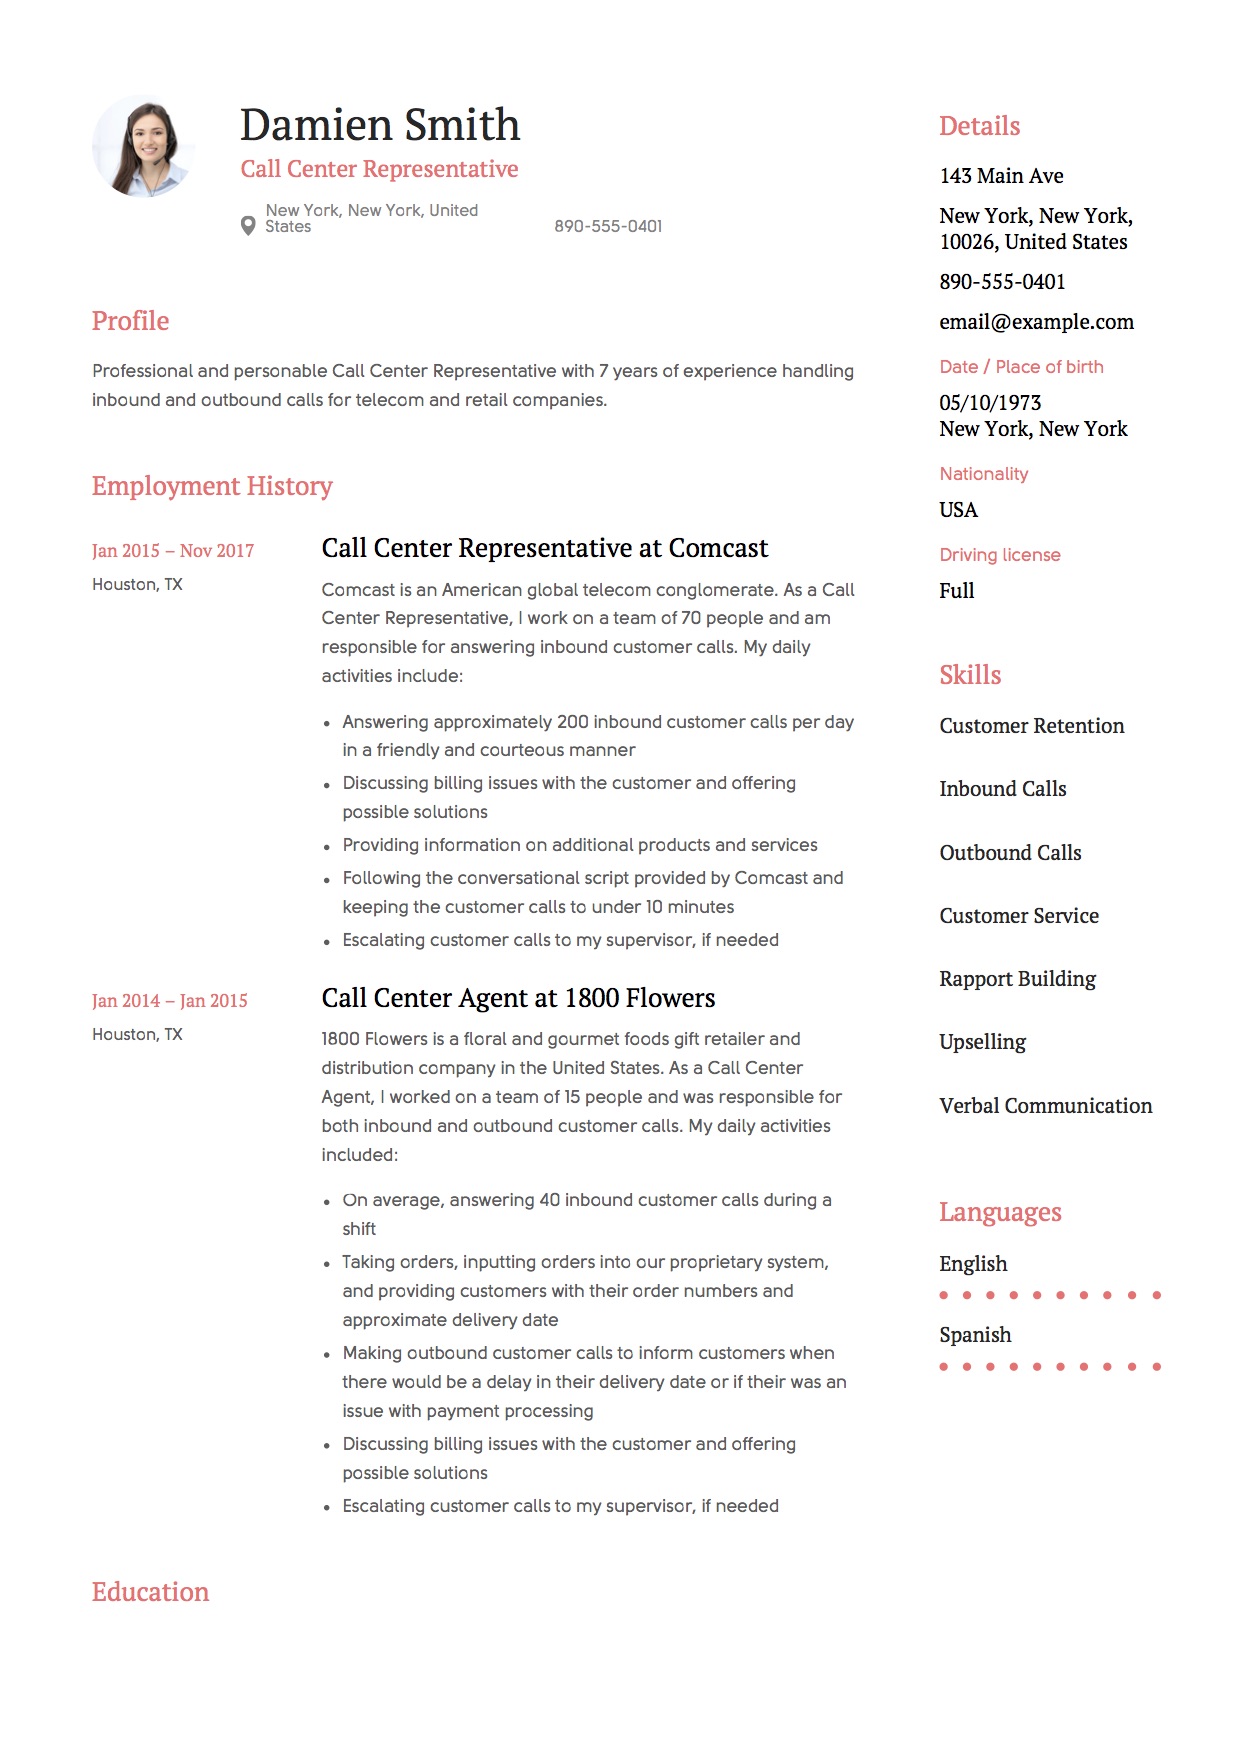 Call Center Representative Resume Template | Resumeviking.com